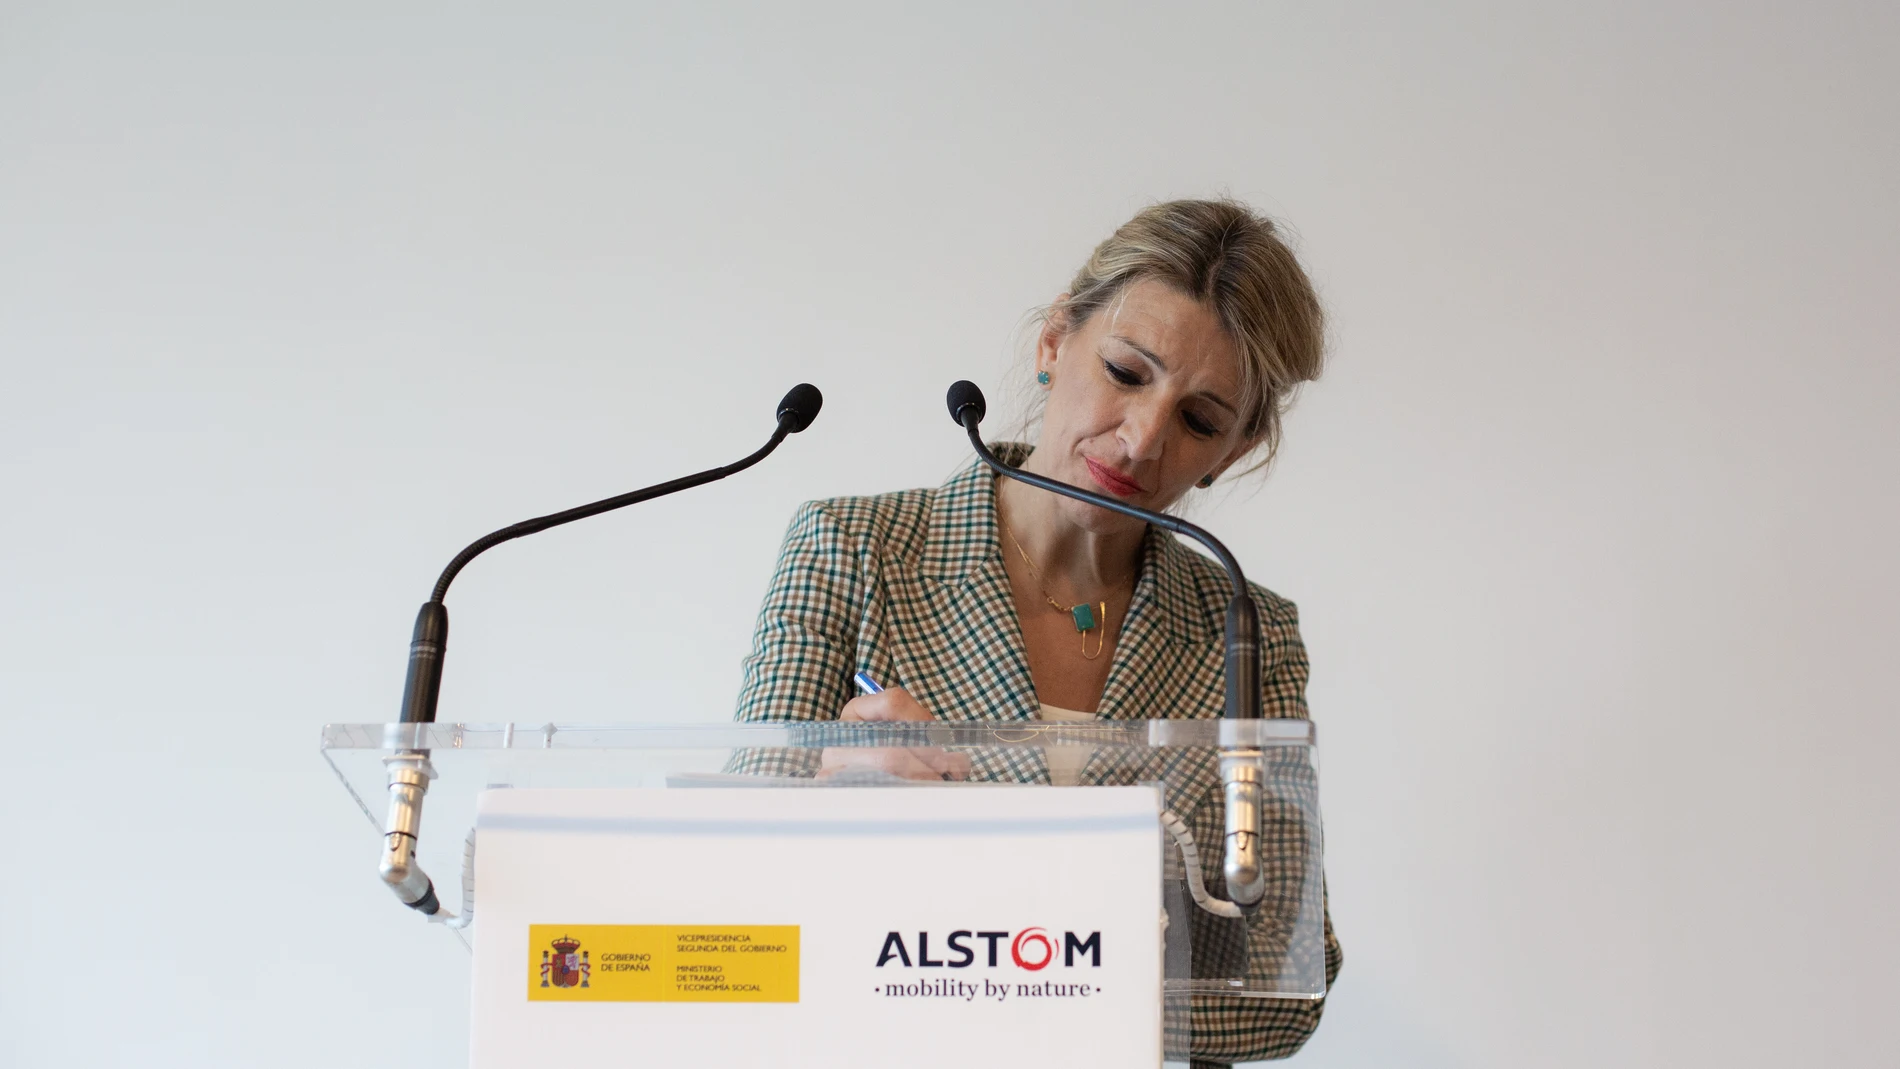 La vicepresidenta segunda del Gobierno y ministra de Trabajo y Economía Social, Yolanda Díaz, interviene durante su visita a la fábrica Alstom Transporte, a 22 de abril de 2022, en Santa Perpètua de Mogoda, Barcelona